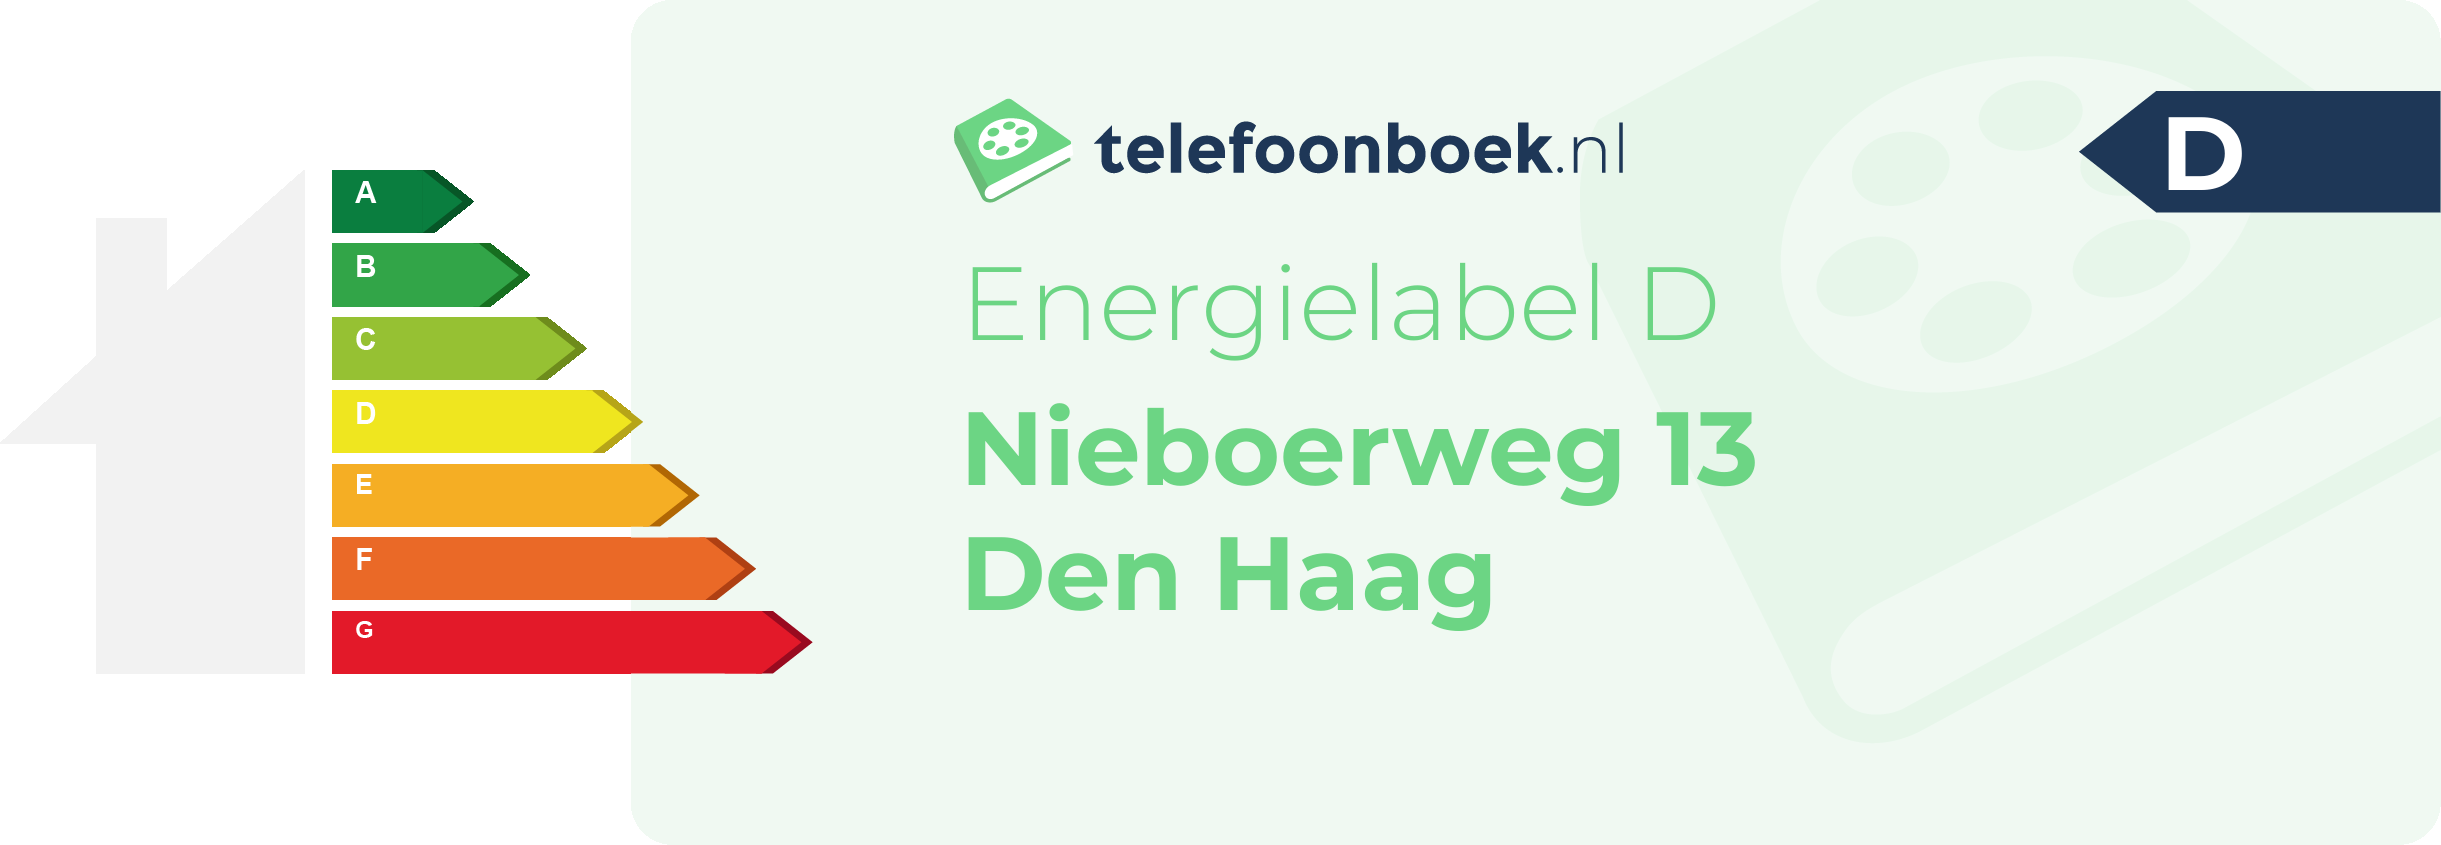 Energielabel Nieboerweg 13 Den Haag